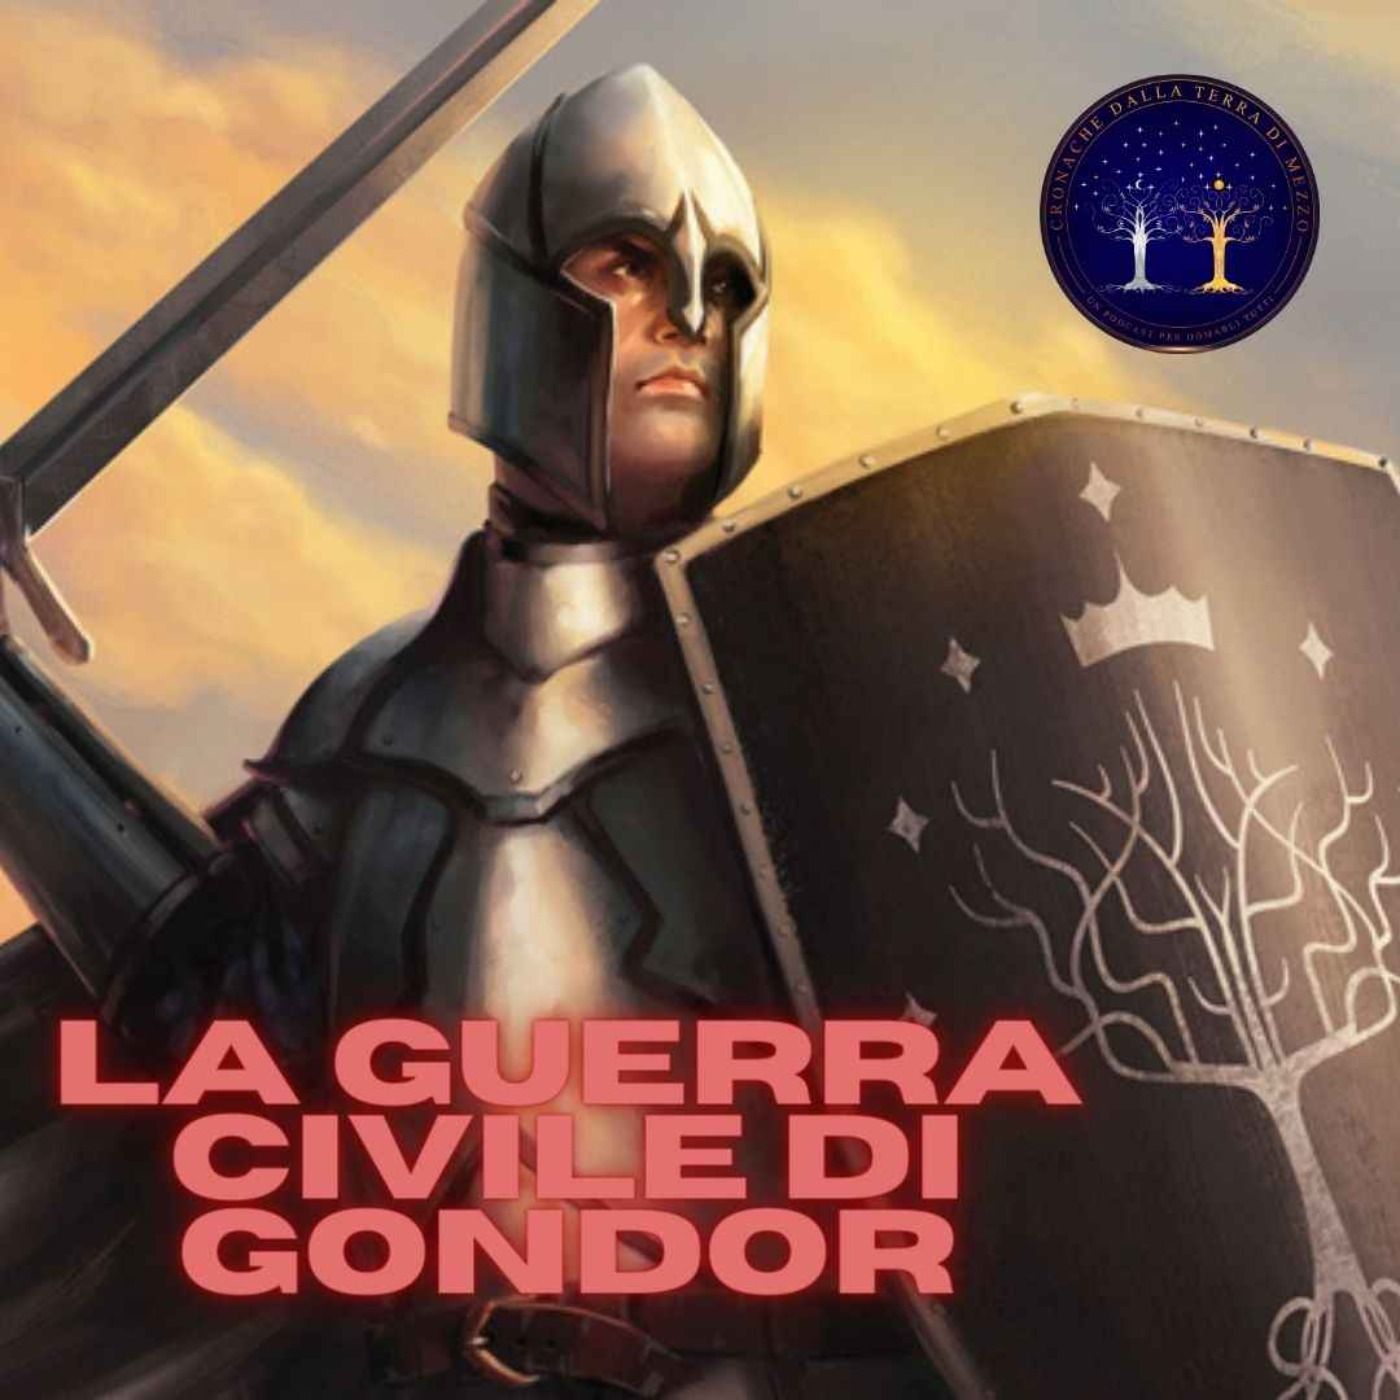 La Guerra Civile di Gondor (1226 - 1447 T.E.)